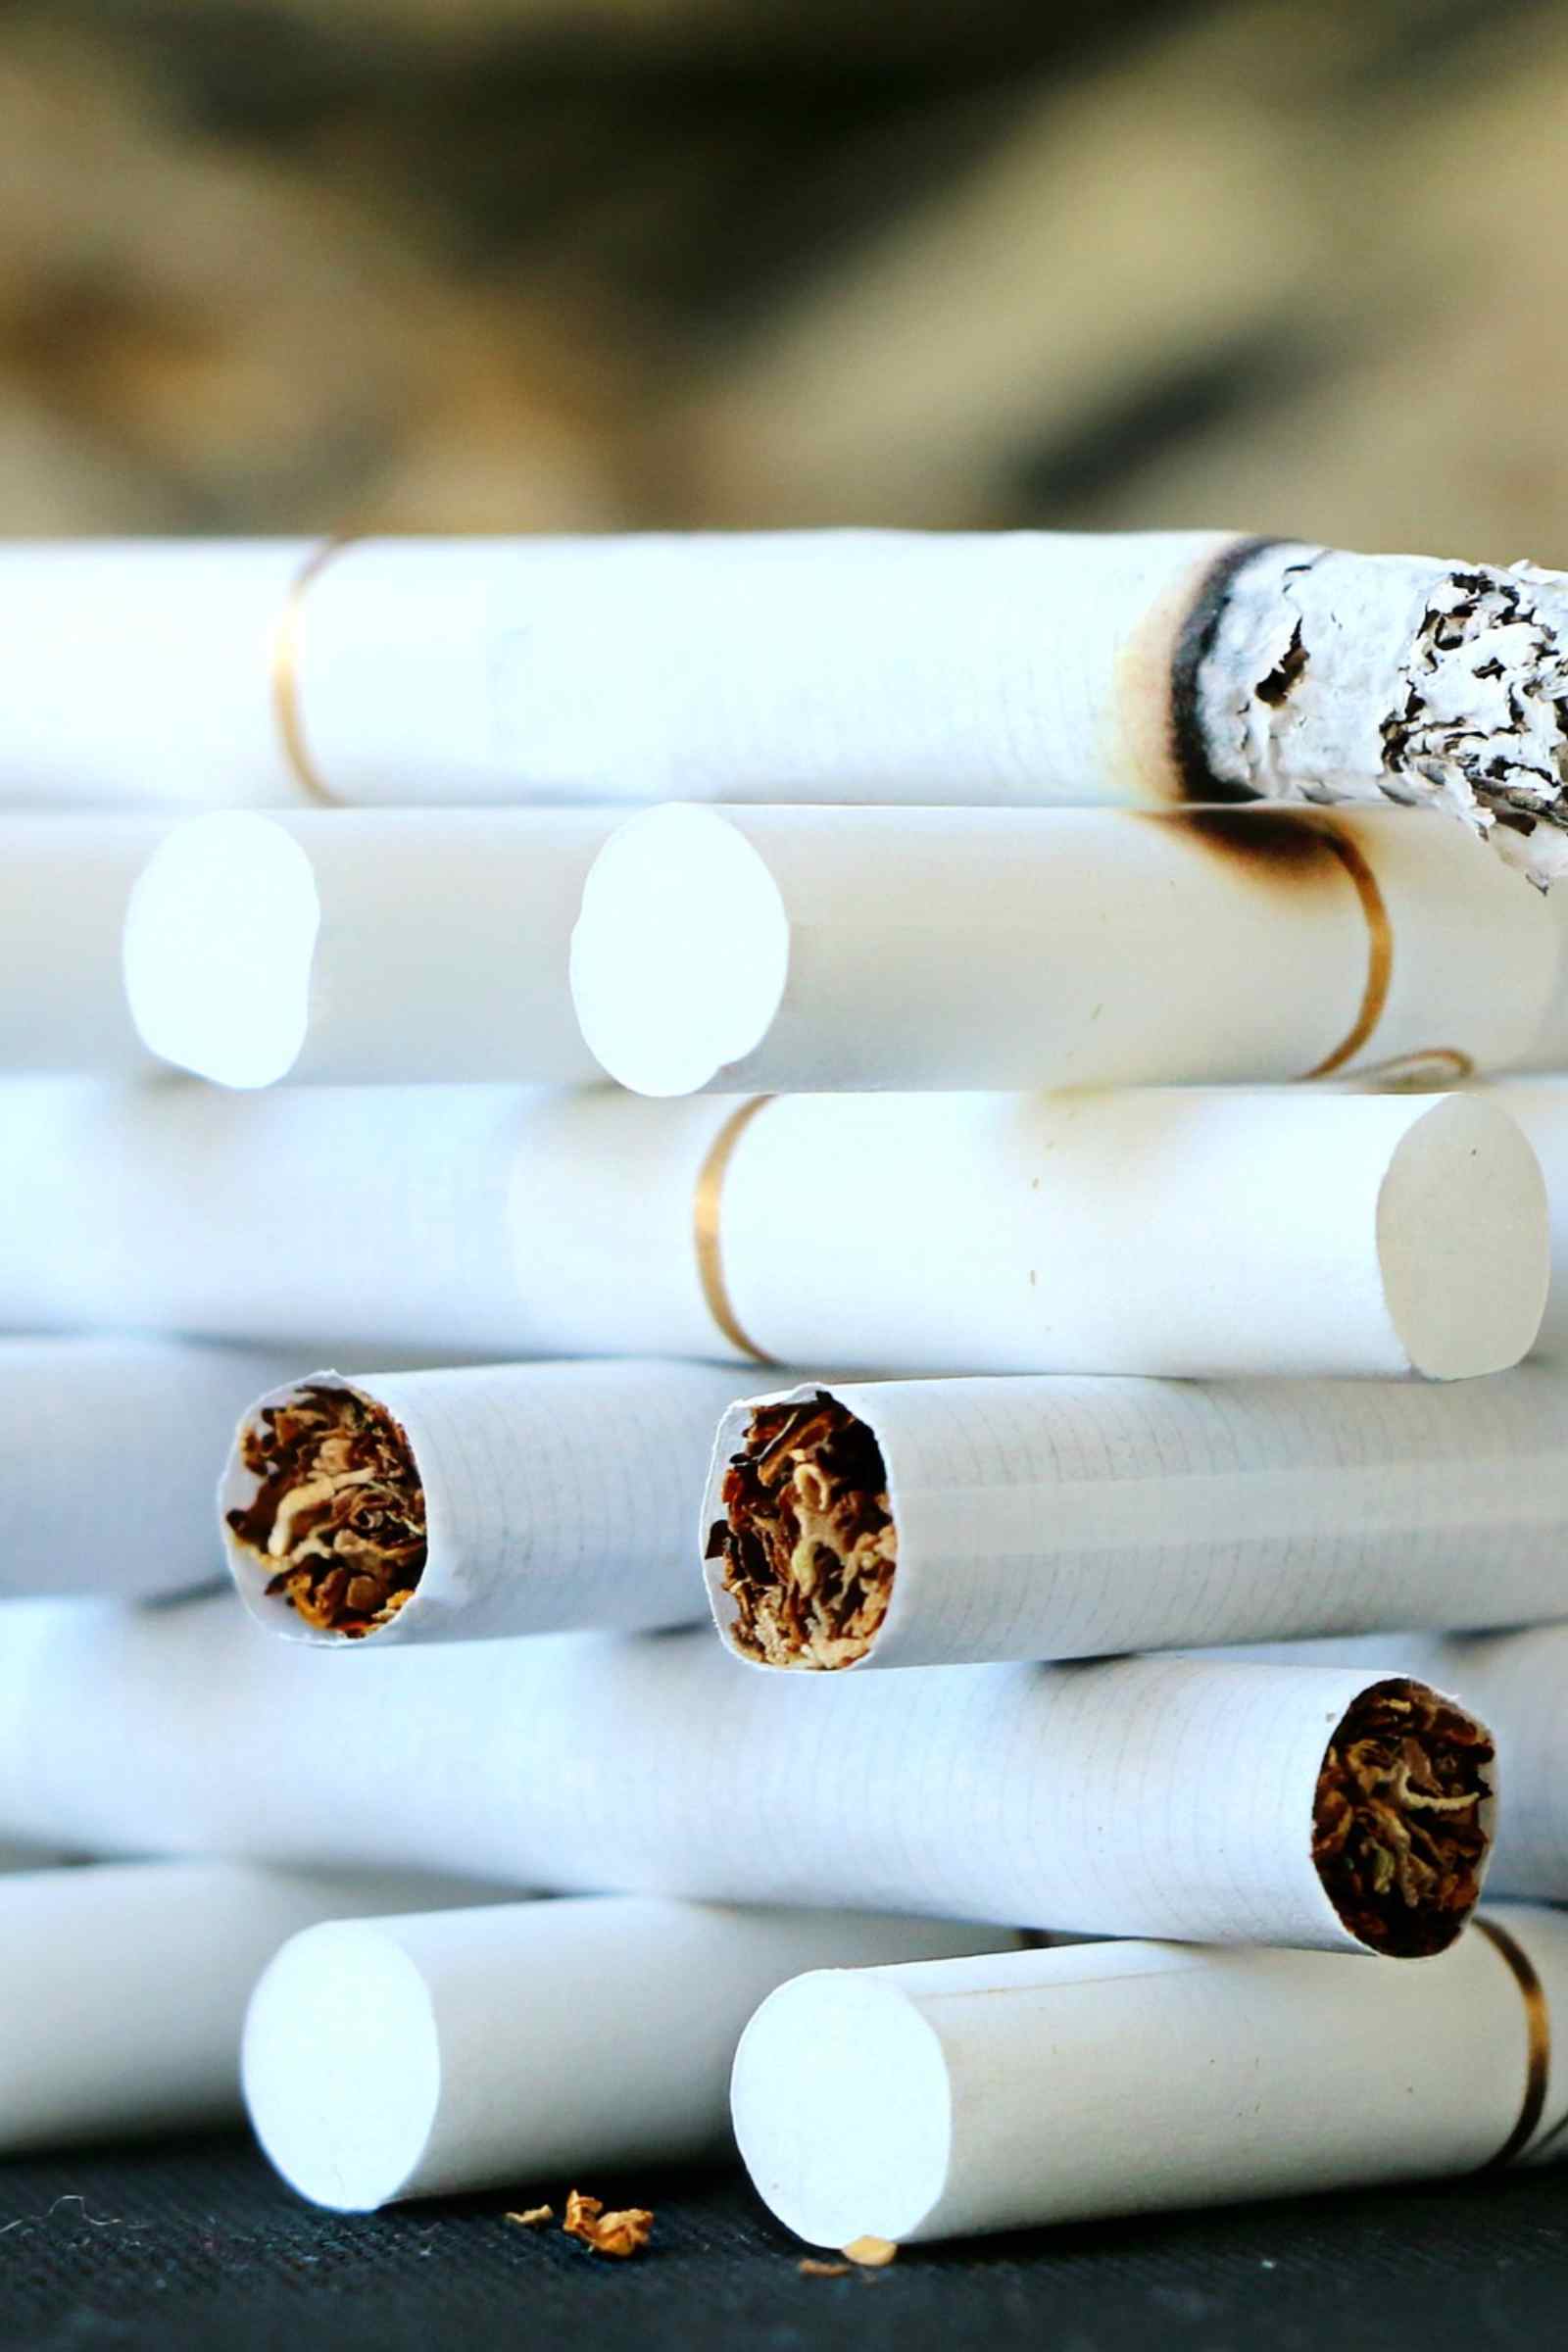 Sigarette rischio tumori 